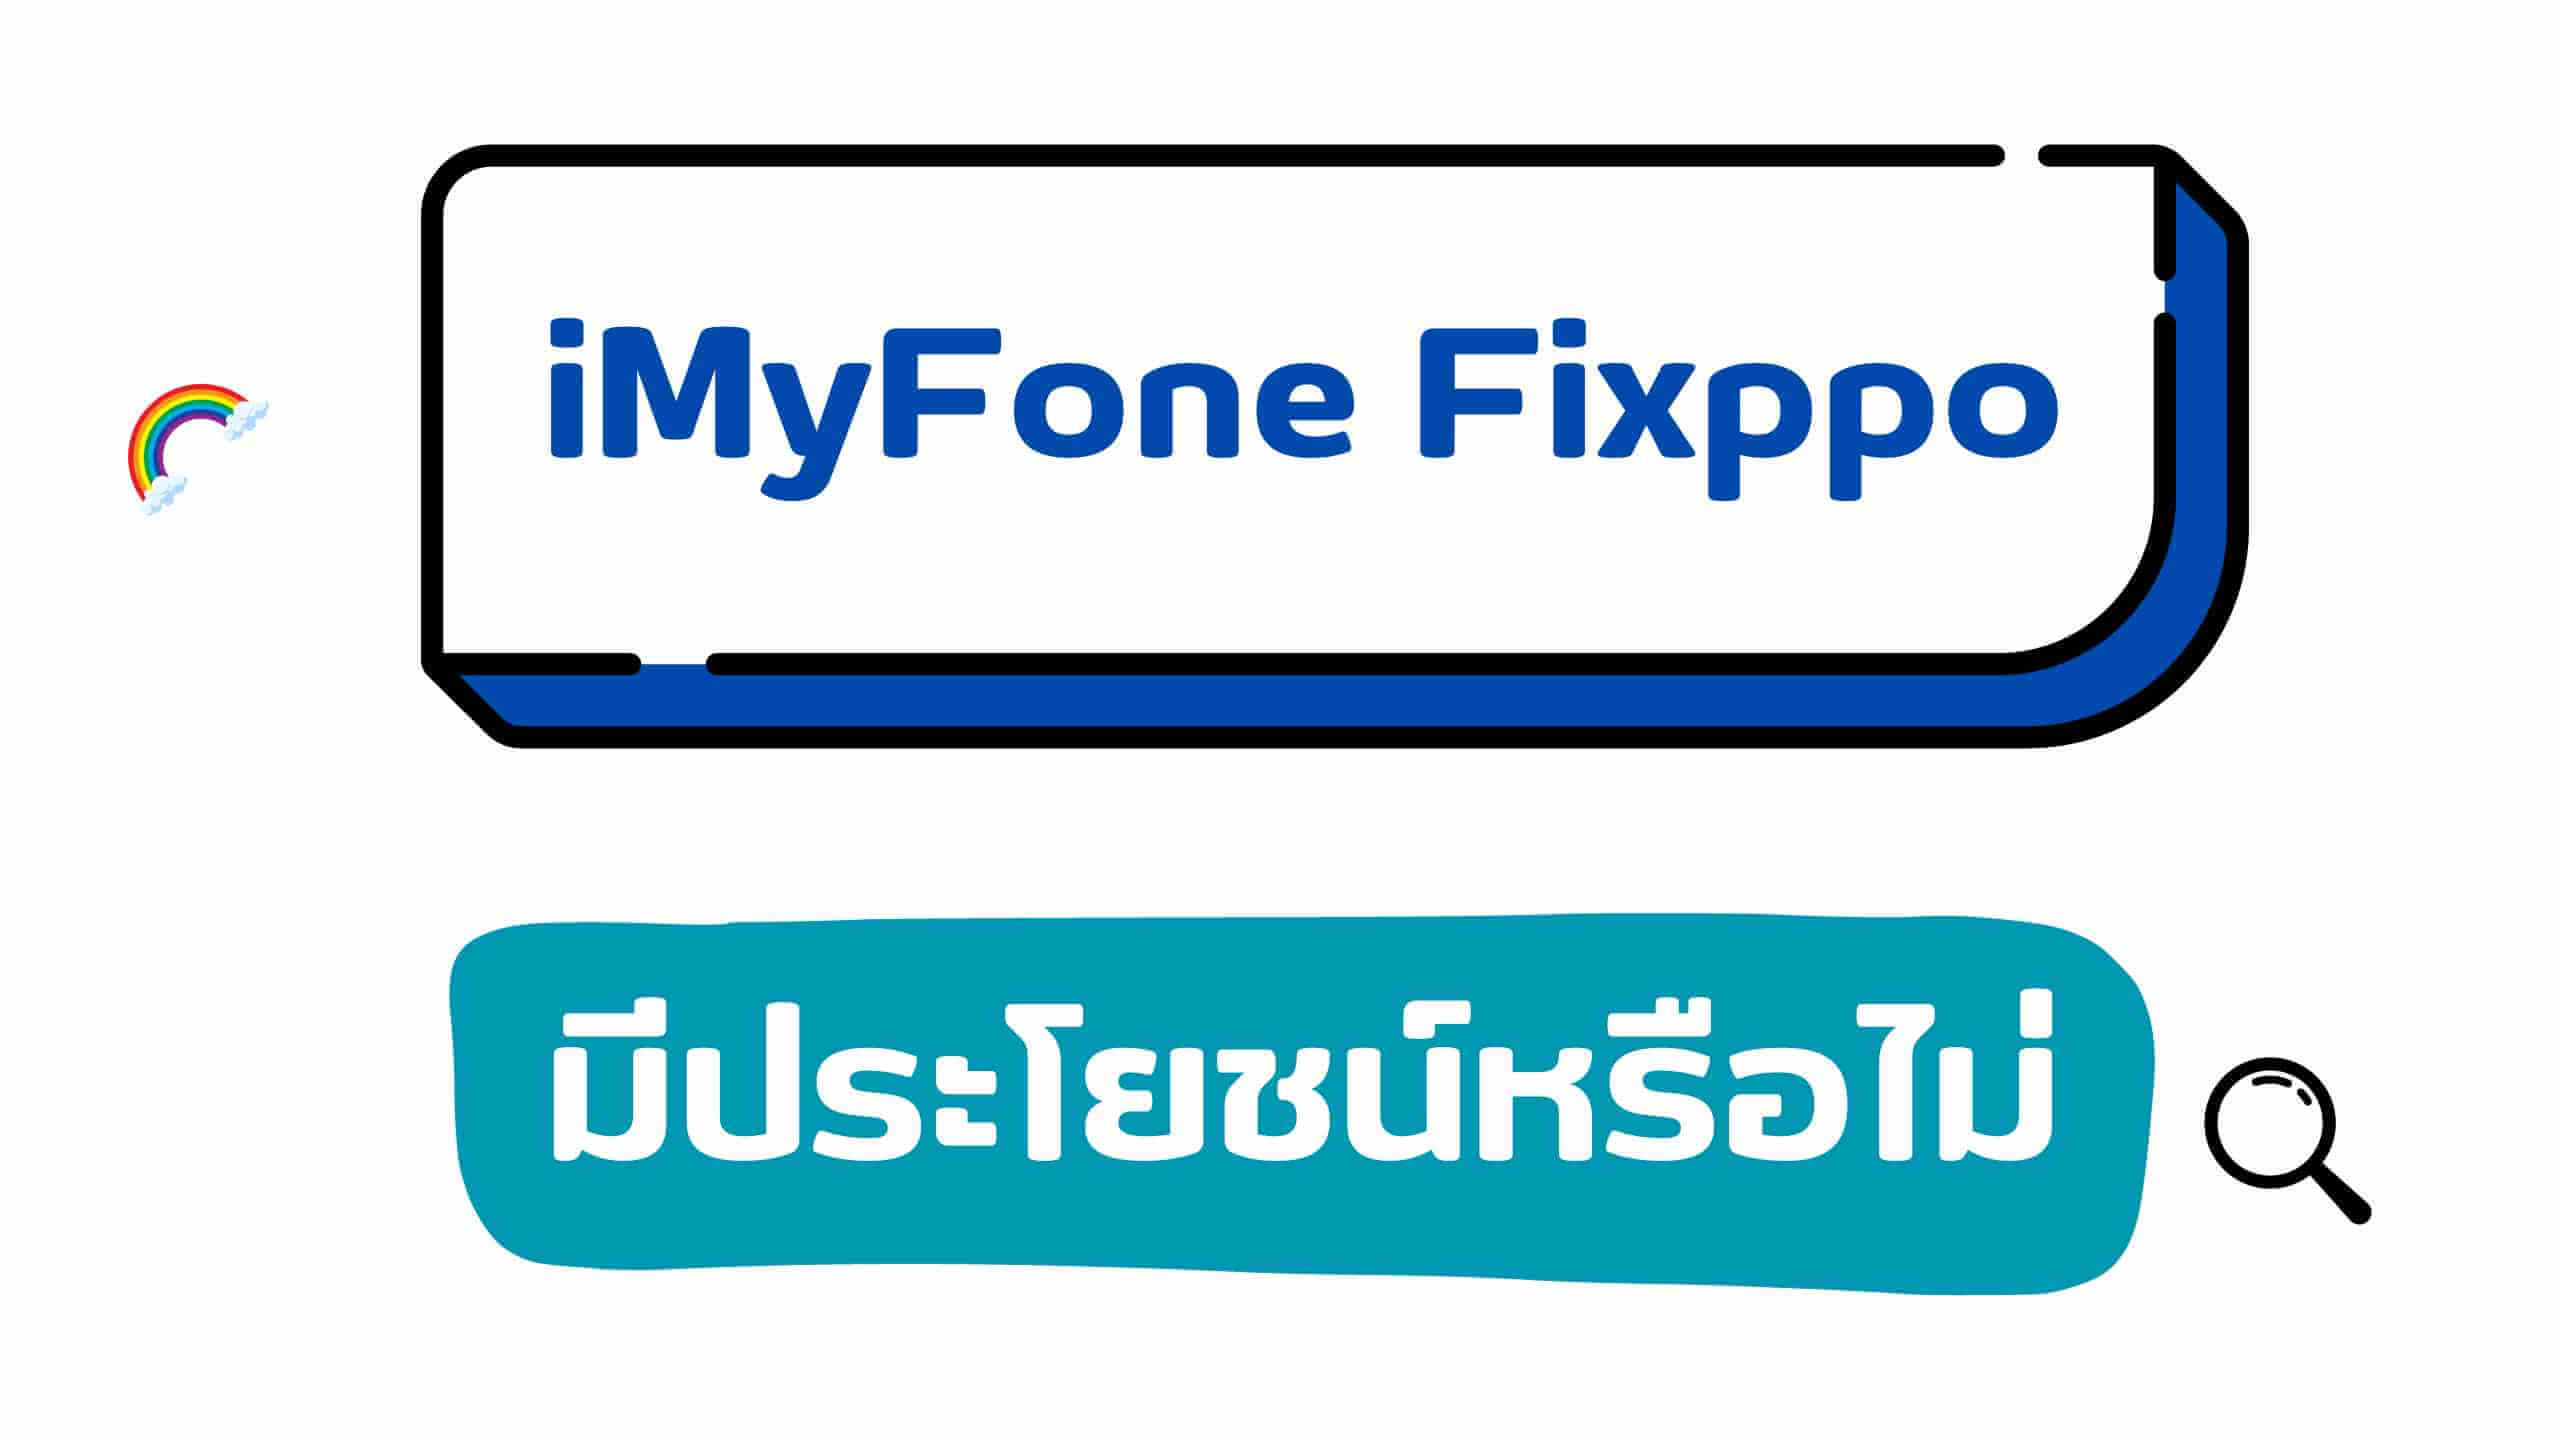 [ล่าสุด] iMyFone Fixppo มีประโยชน์หรือไม่? ปลอดภัยในการใช้งานหรือไม่?